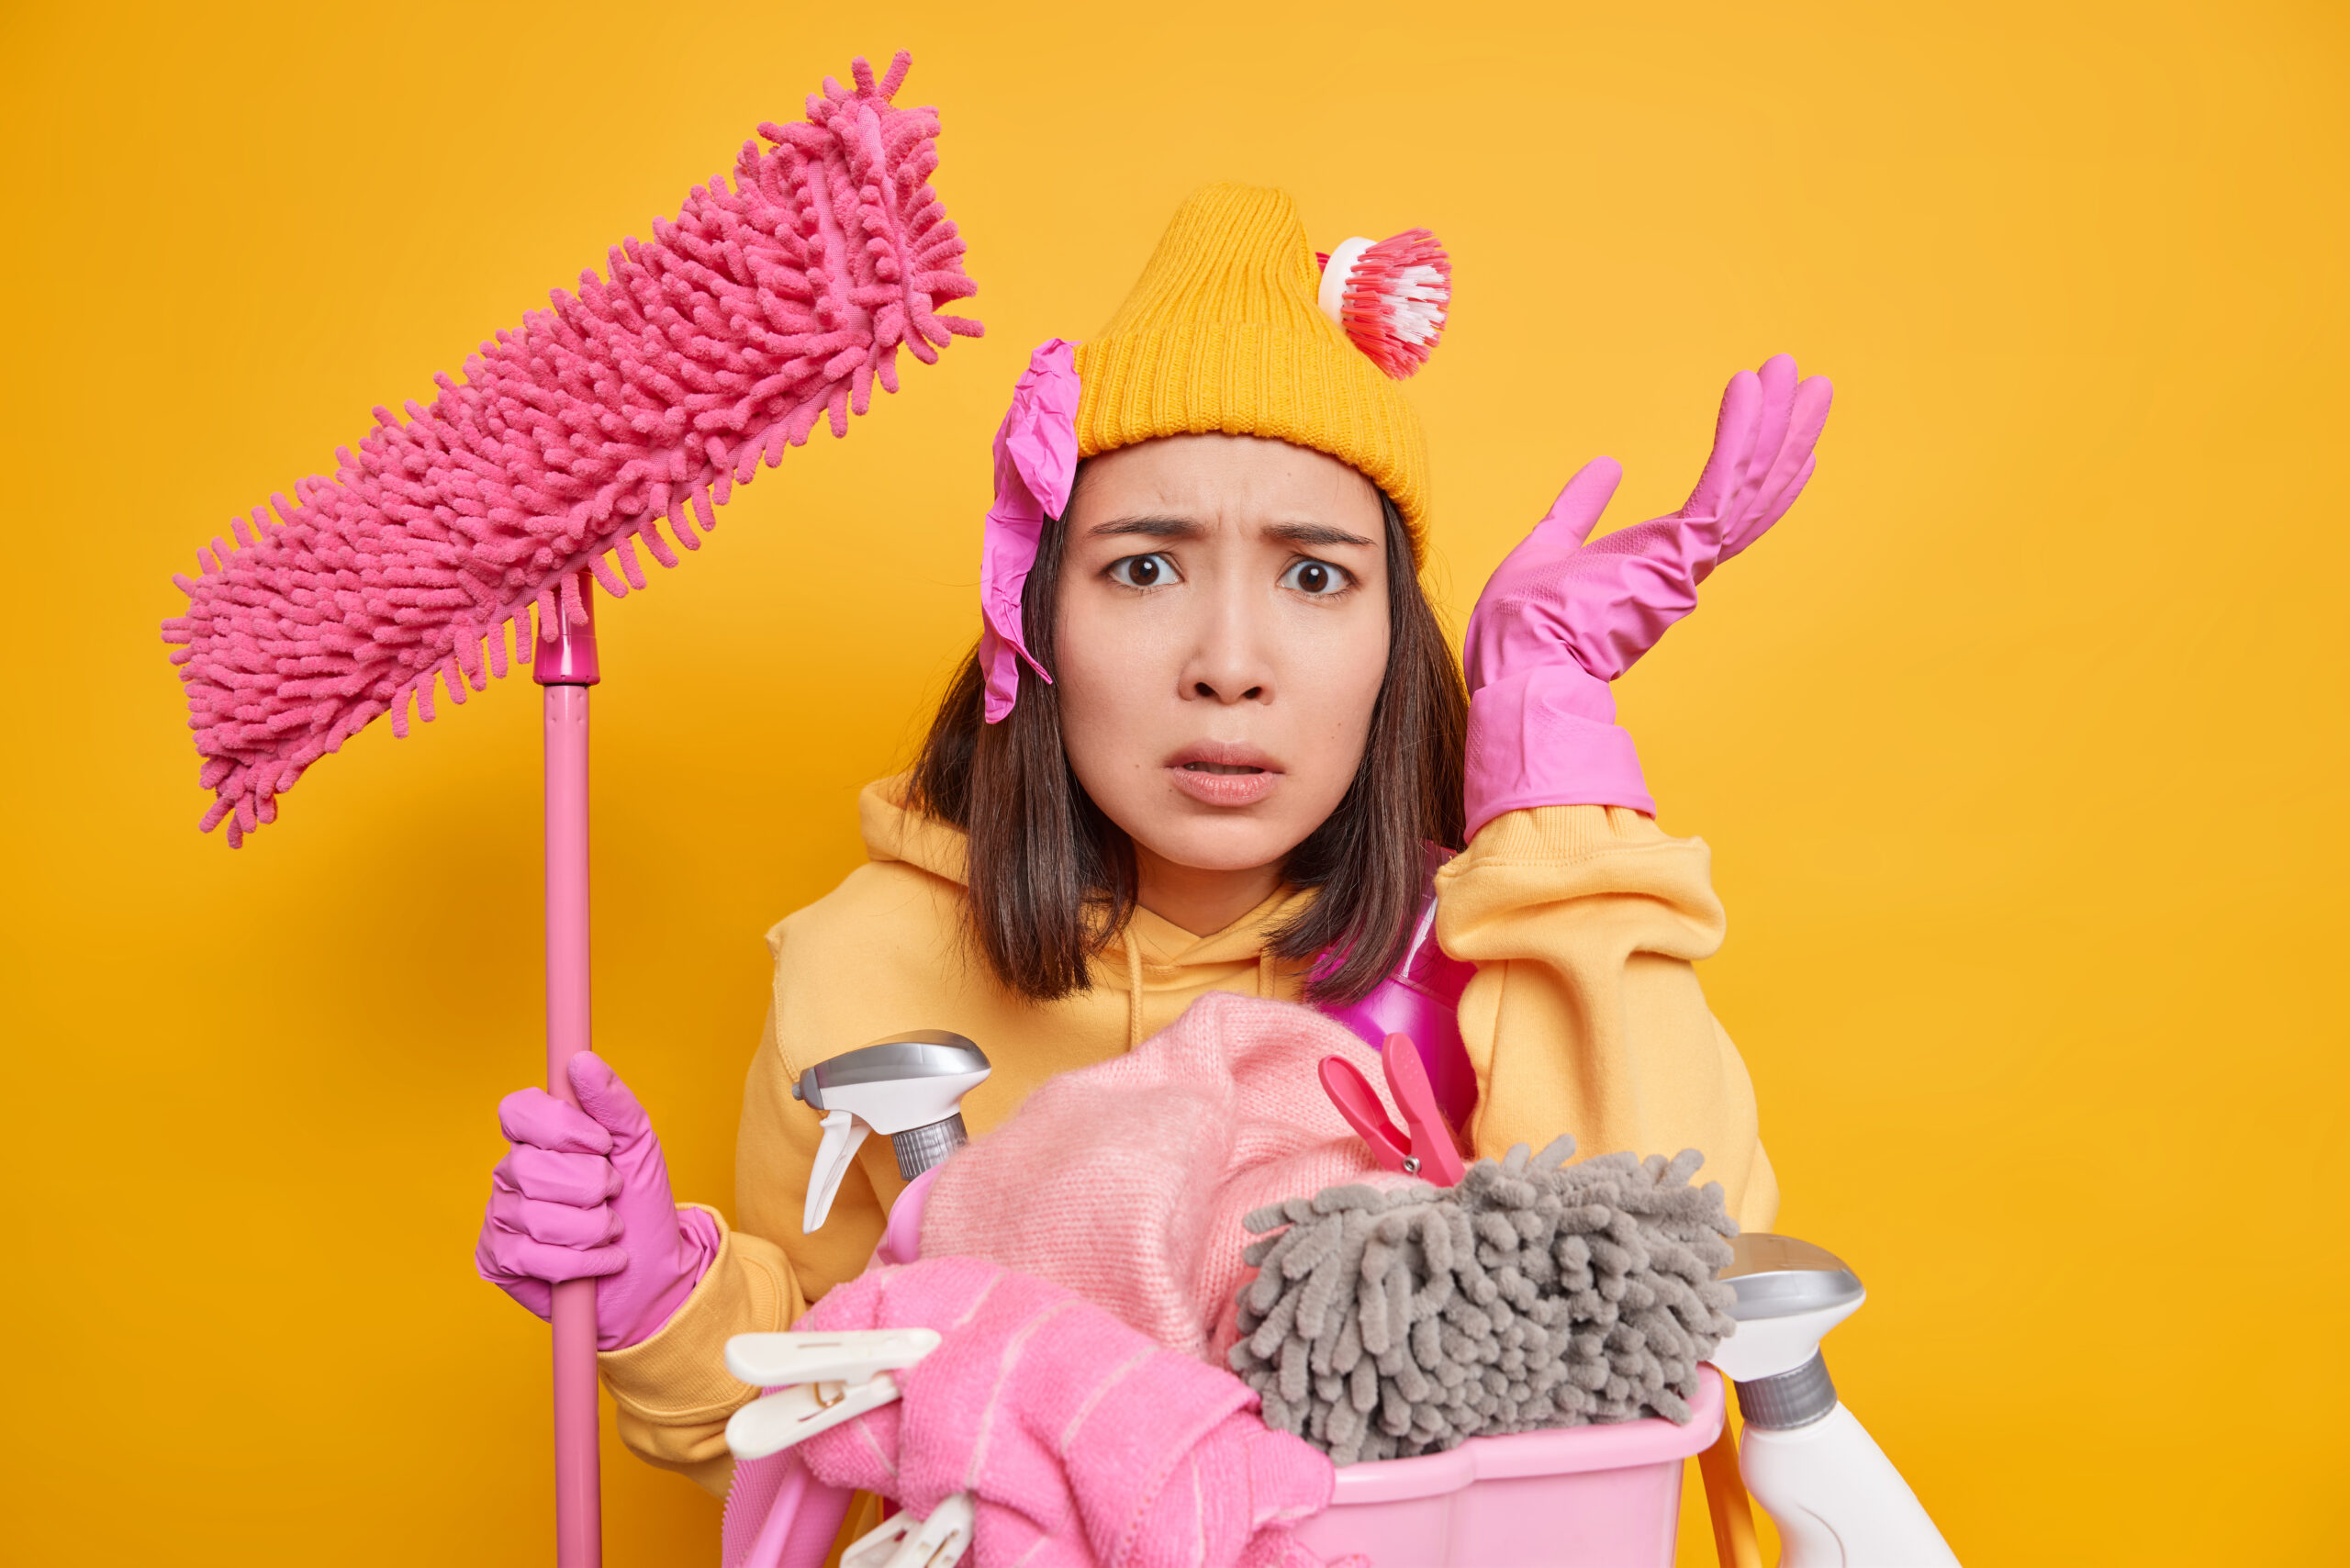 La pulizia maniacale può nuocere alla salute: lo dice uno studio scientifico